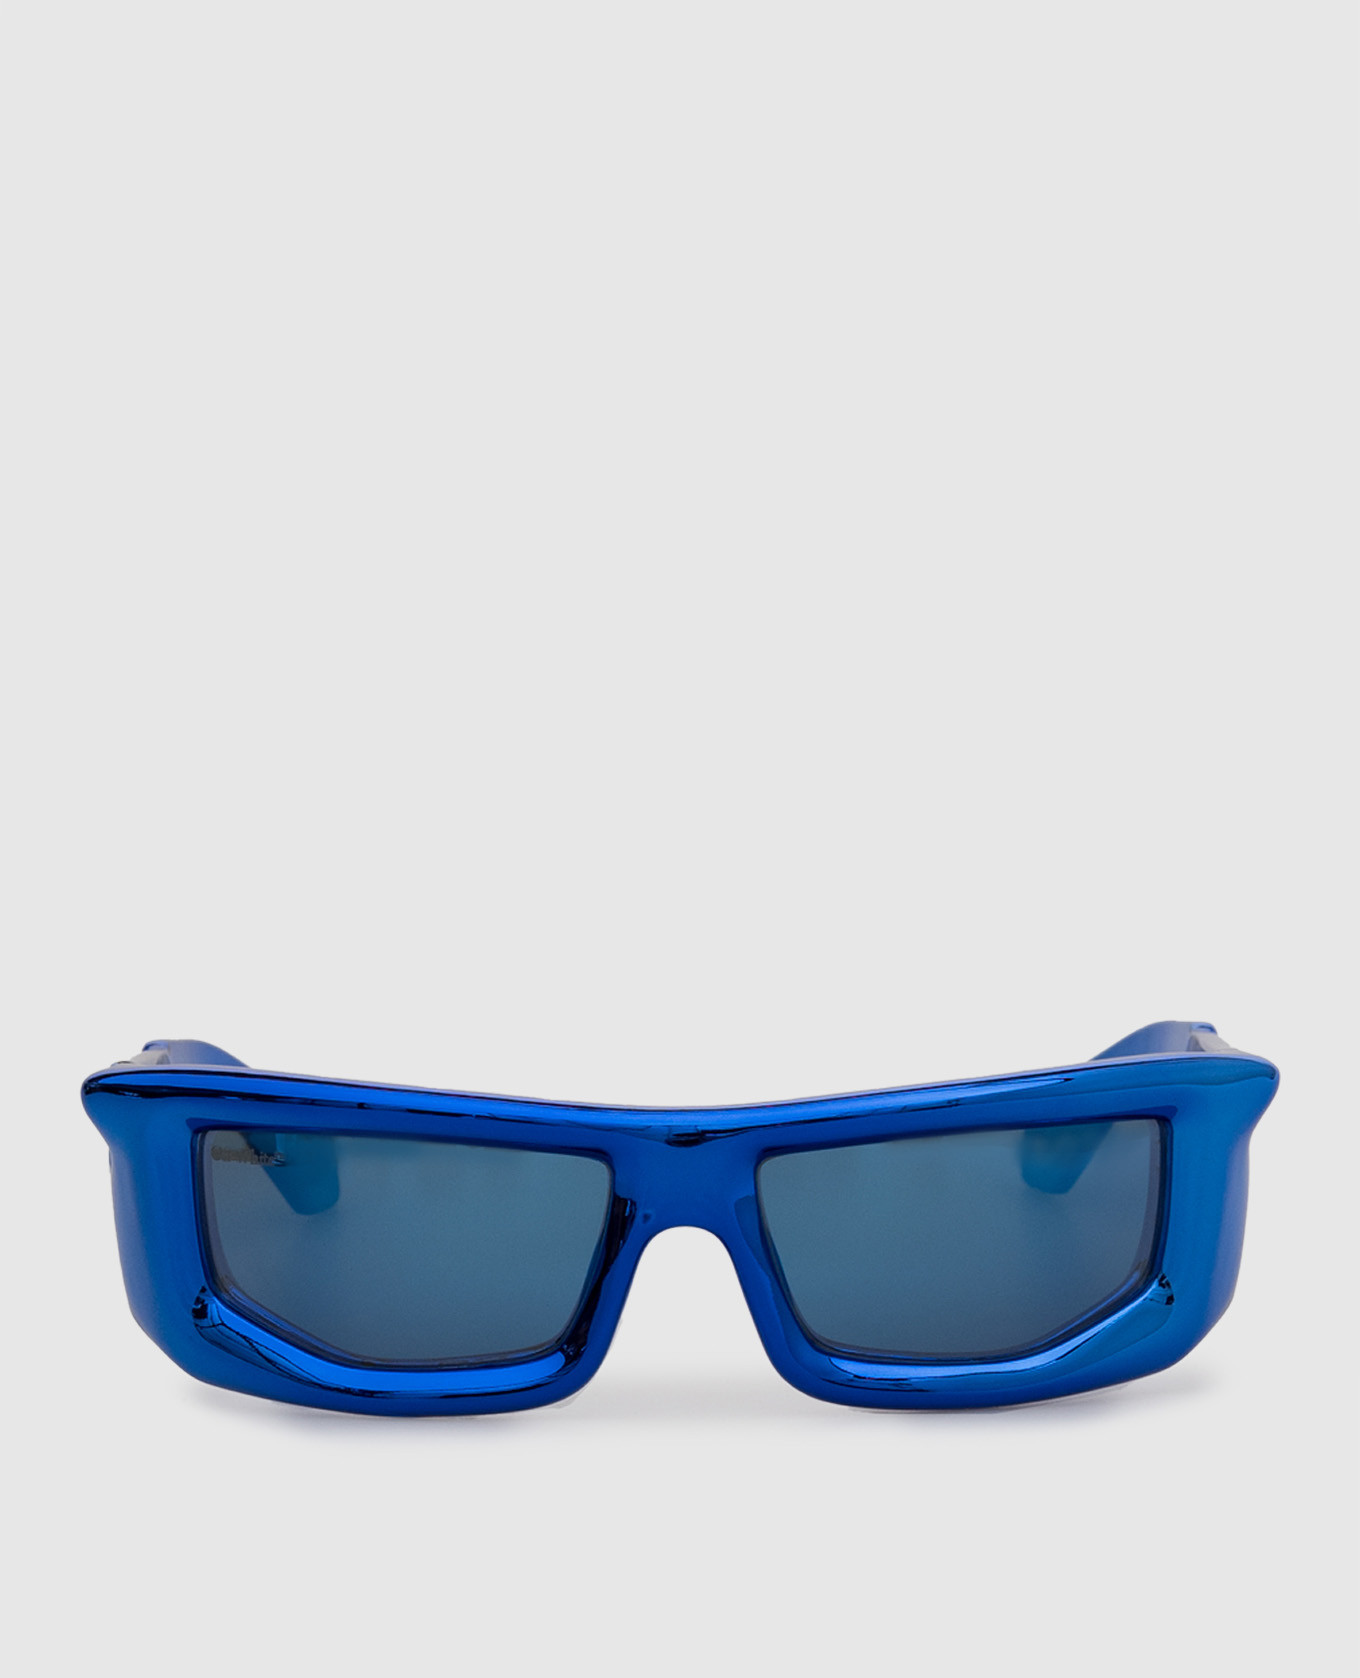 Gafas de sol azul volcanita con efecto metalizado.